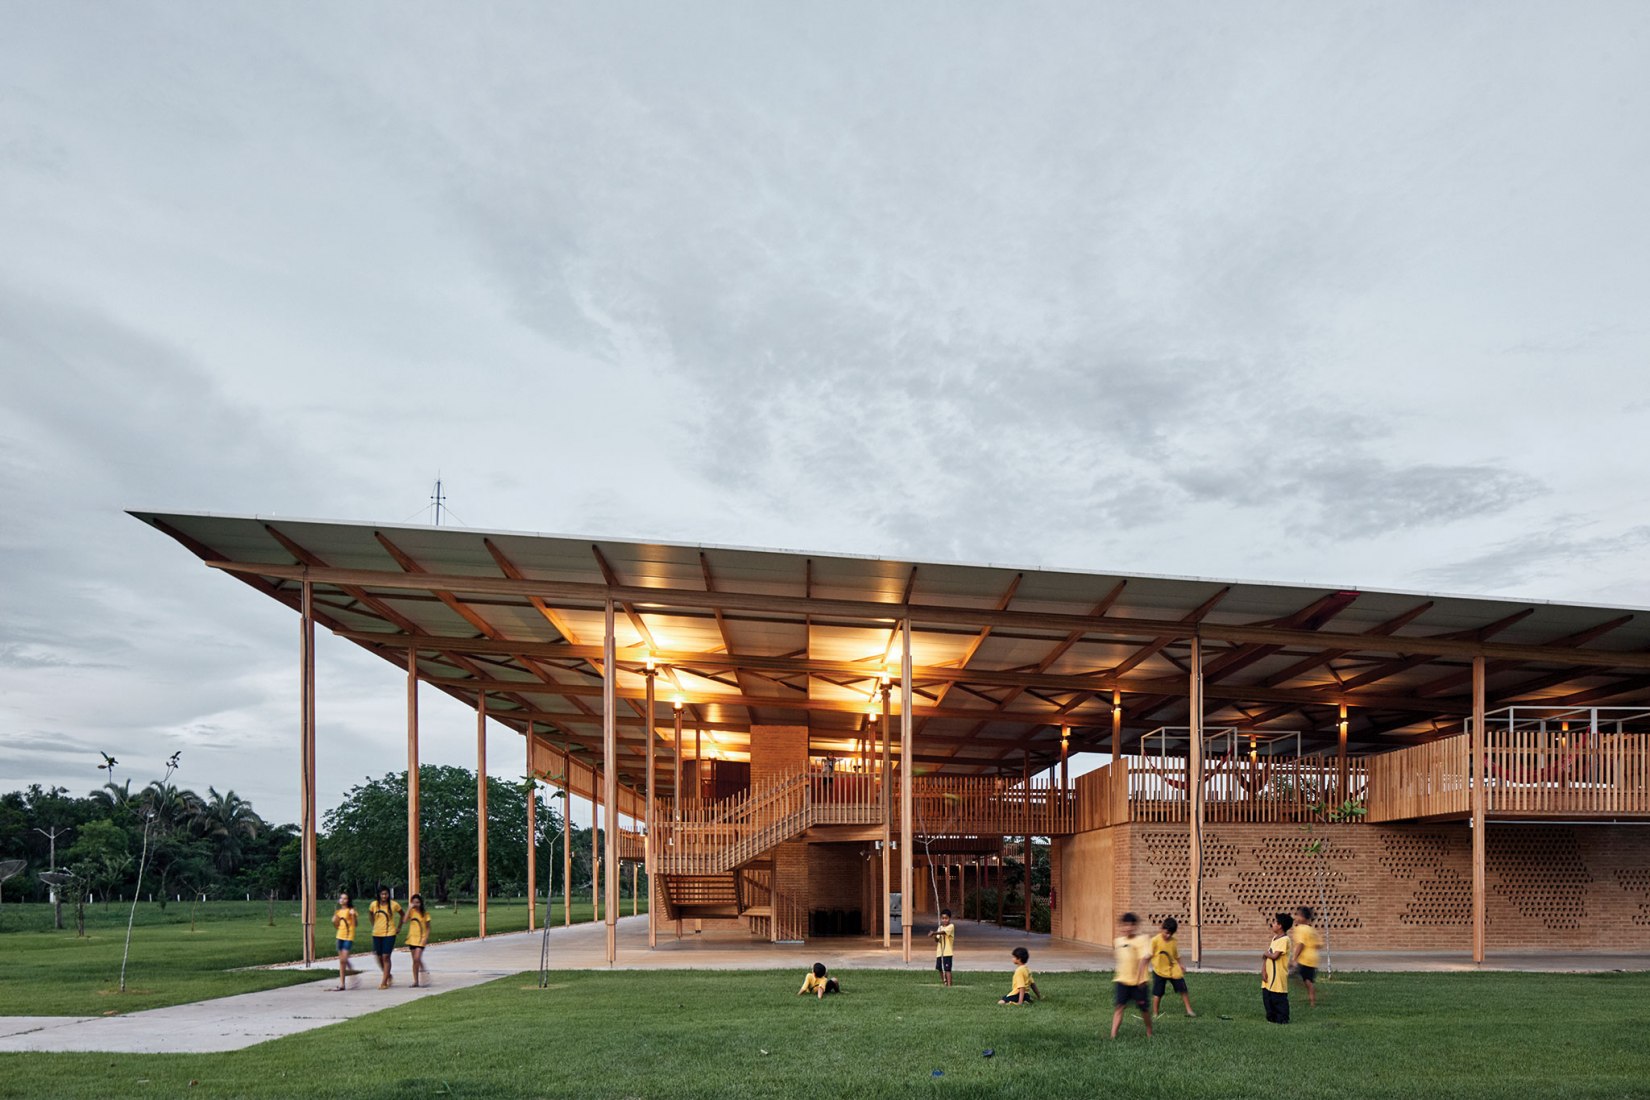 Así luce “Ciudad de los niños”, la escuela rural elegida mejor edificio nuevo del mundo (Fotos)